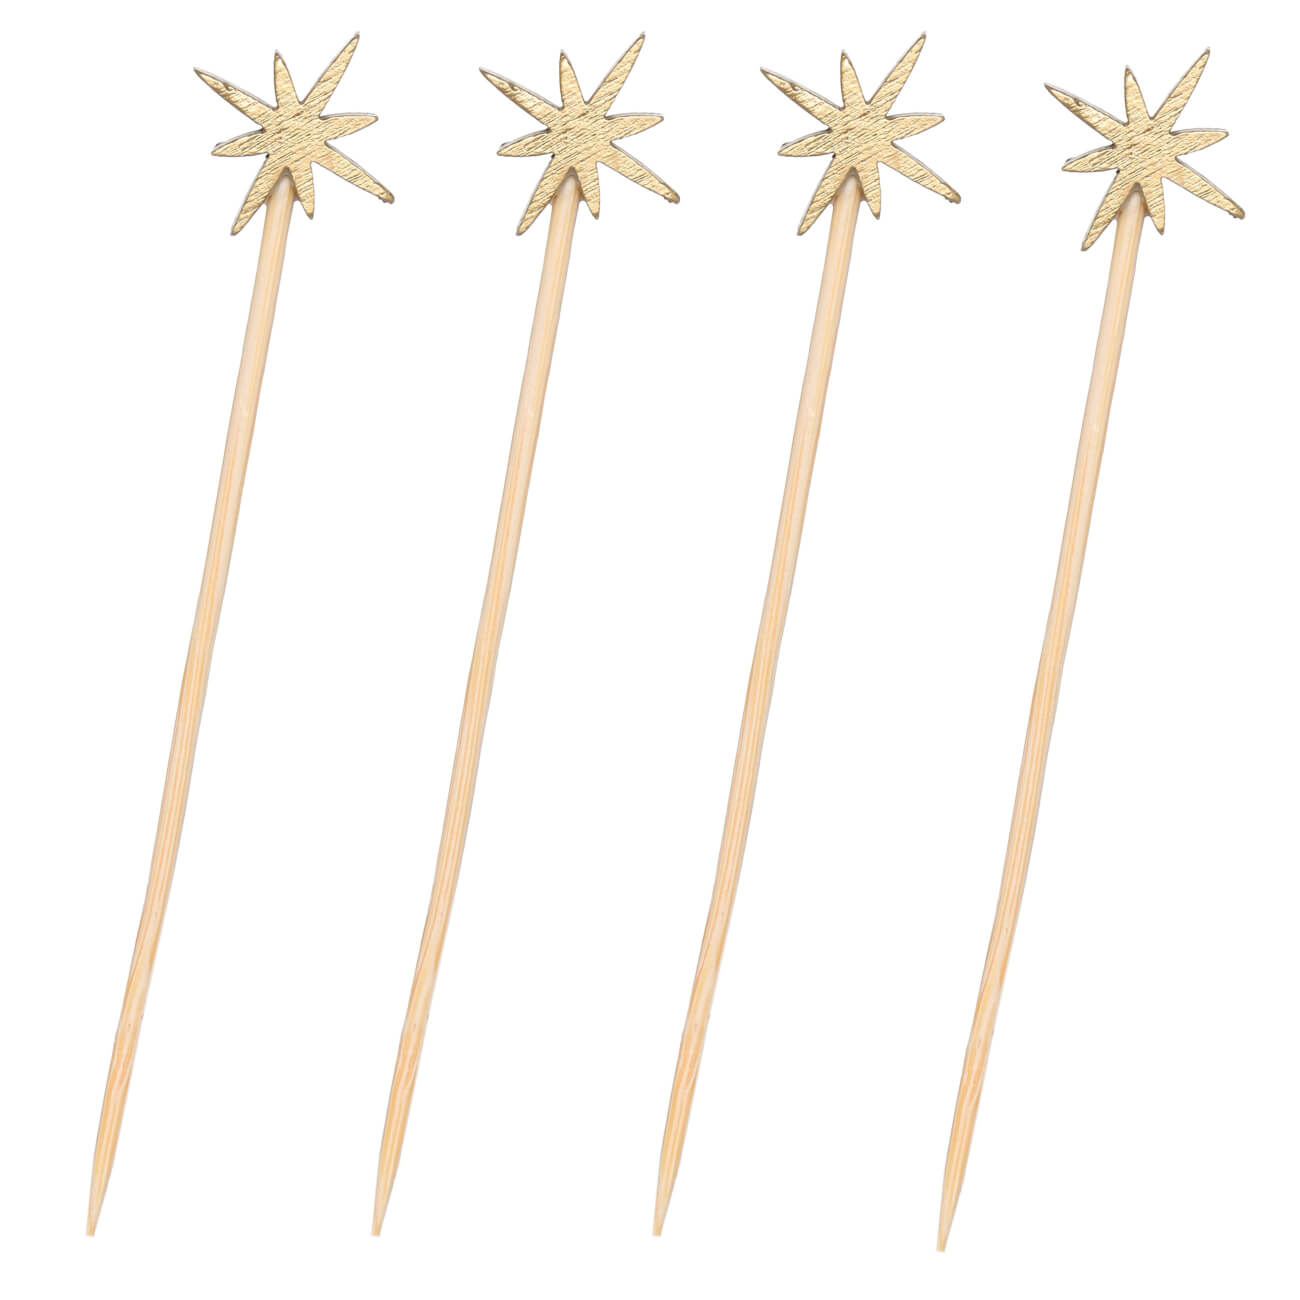 Шпажка для канапе, 9 см, 20 шт, бамбук, золотистая, Звезда, Elegant details изображение № 1